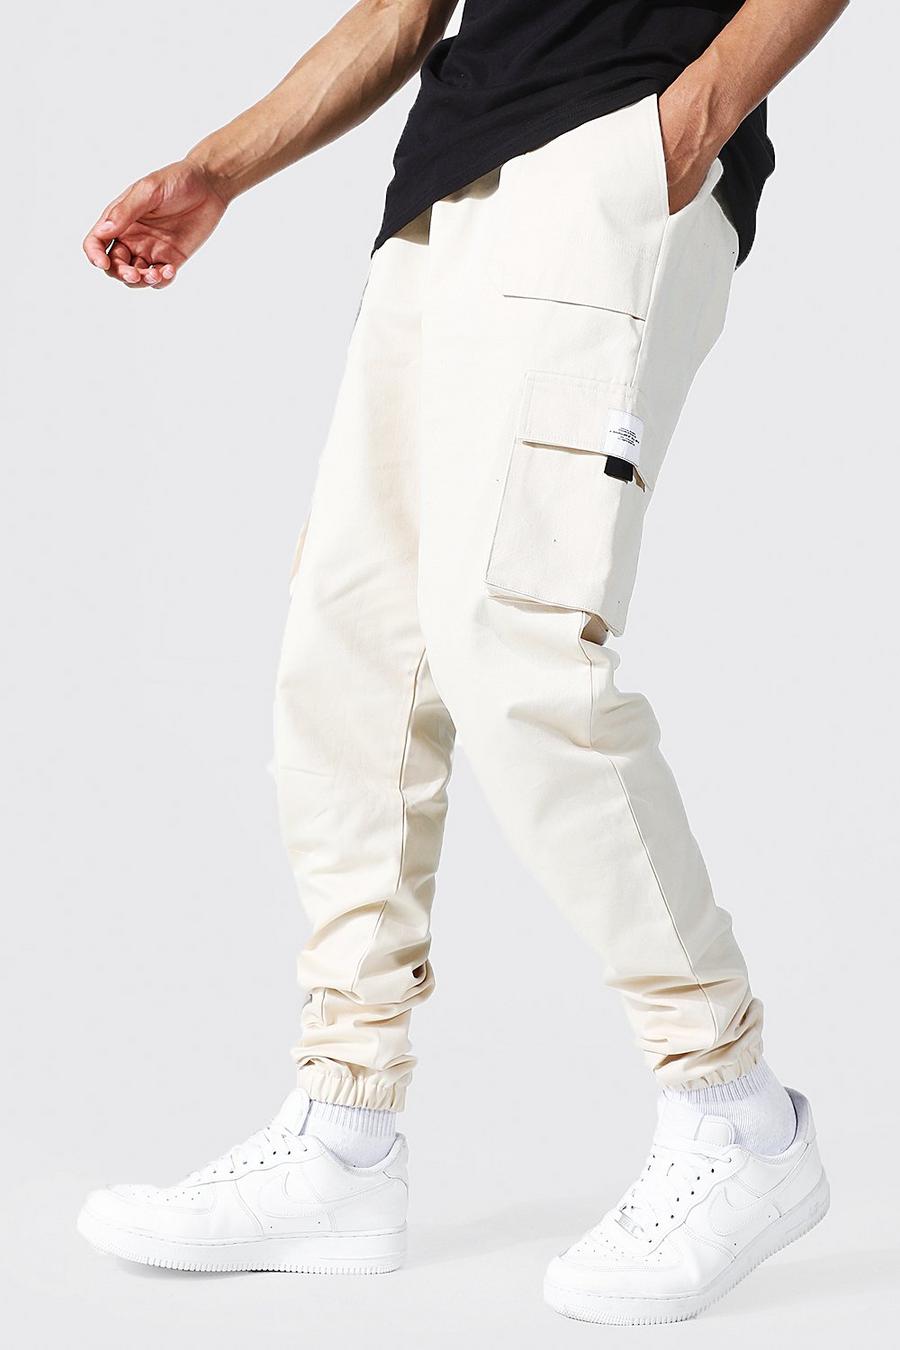 Pantaloni tuta Tall stile Cargo in twill con etichetta e cintura, Ecru bianco